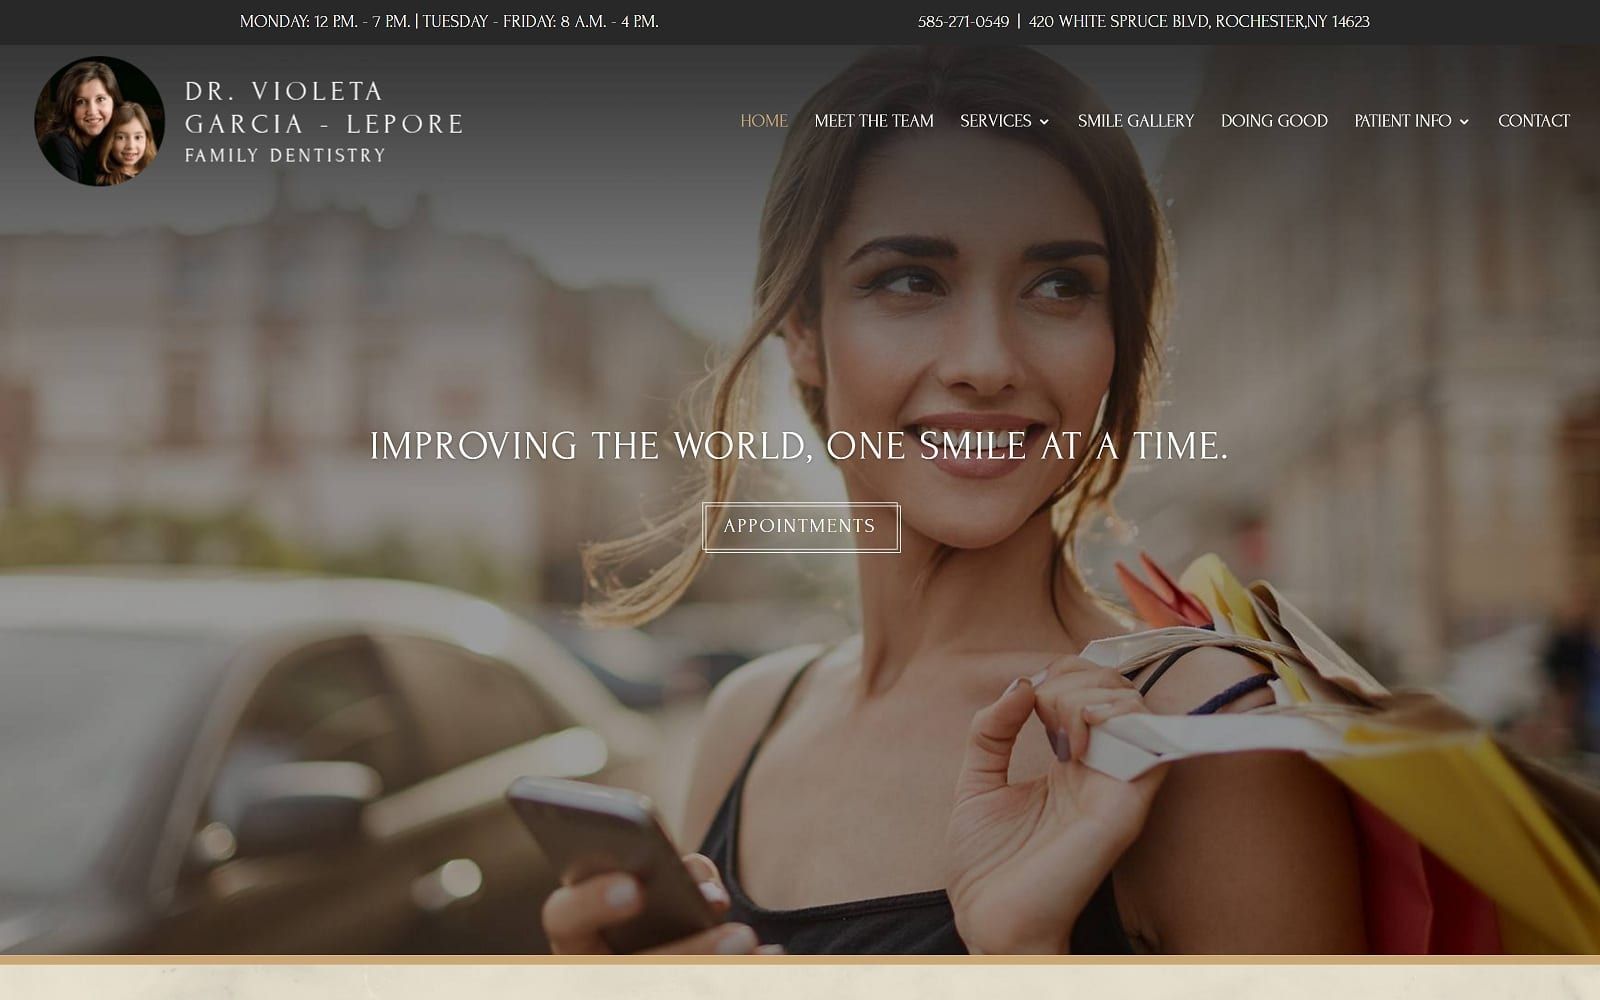 The Screenshot of Dr. Violeta Garcia-Lepore Family Dentistry drgarciafamilydentistry.com Website